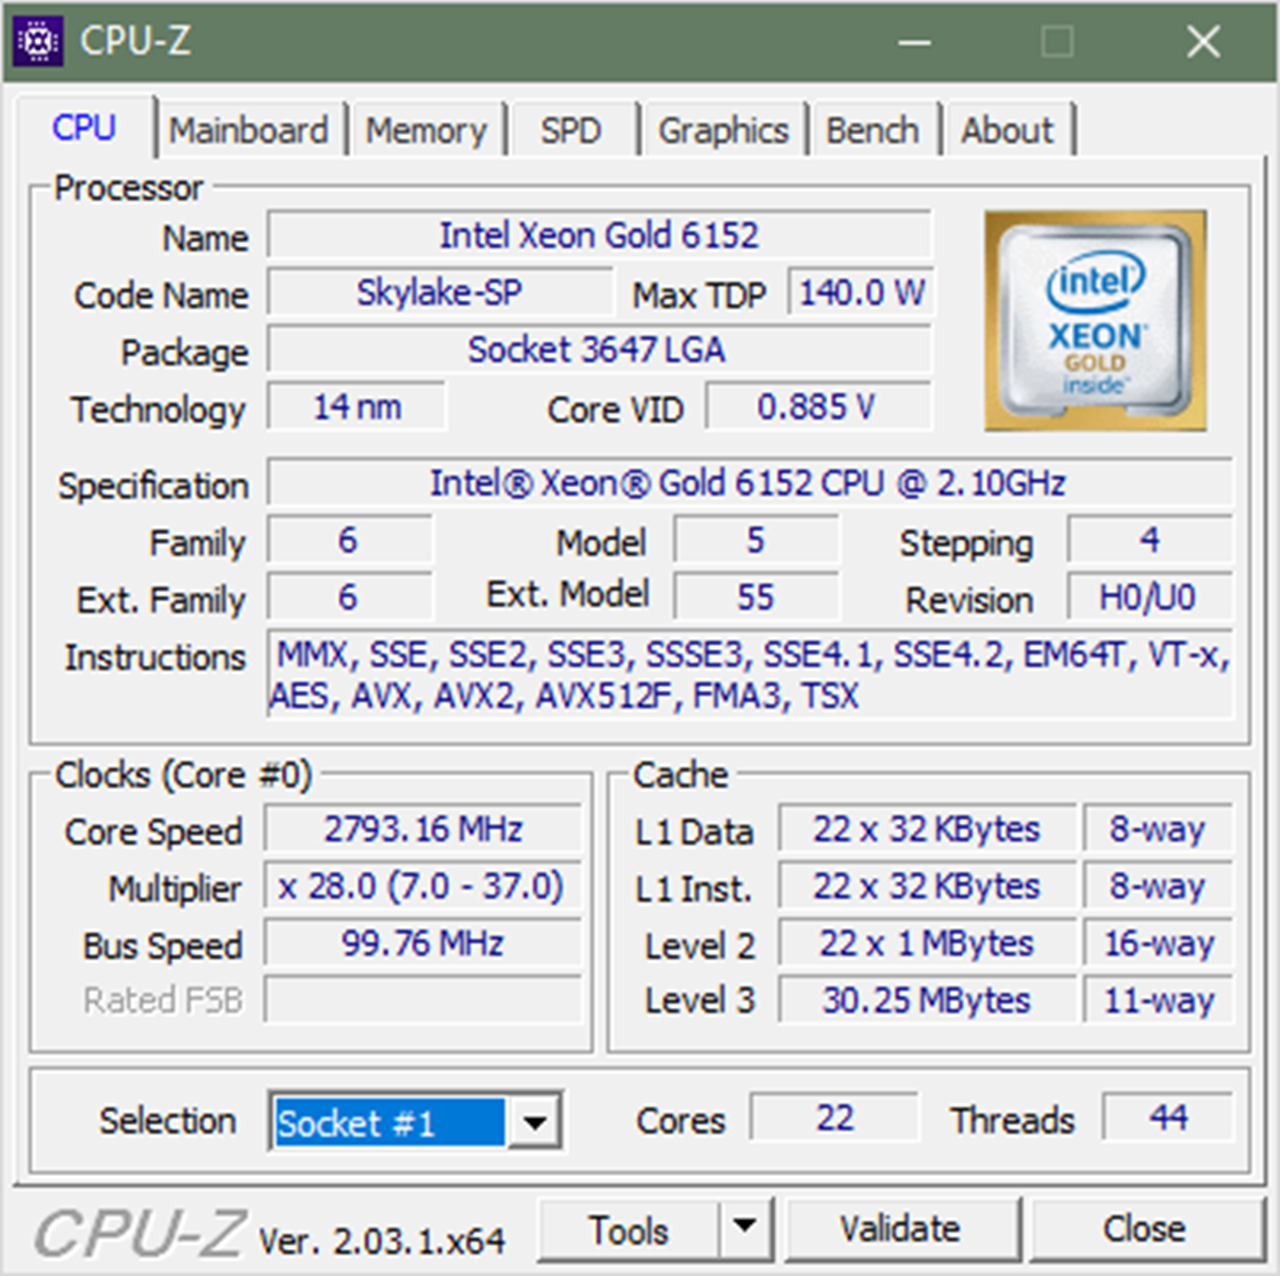 Dell R740XD - 2x Gold 6152 - 384GB MEM - 6x 960 GB SSD 2x 300 GB HDD